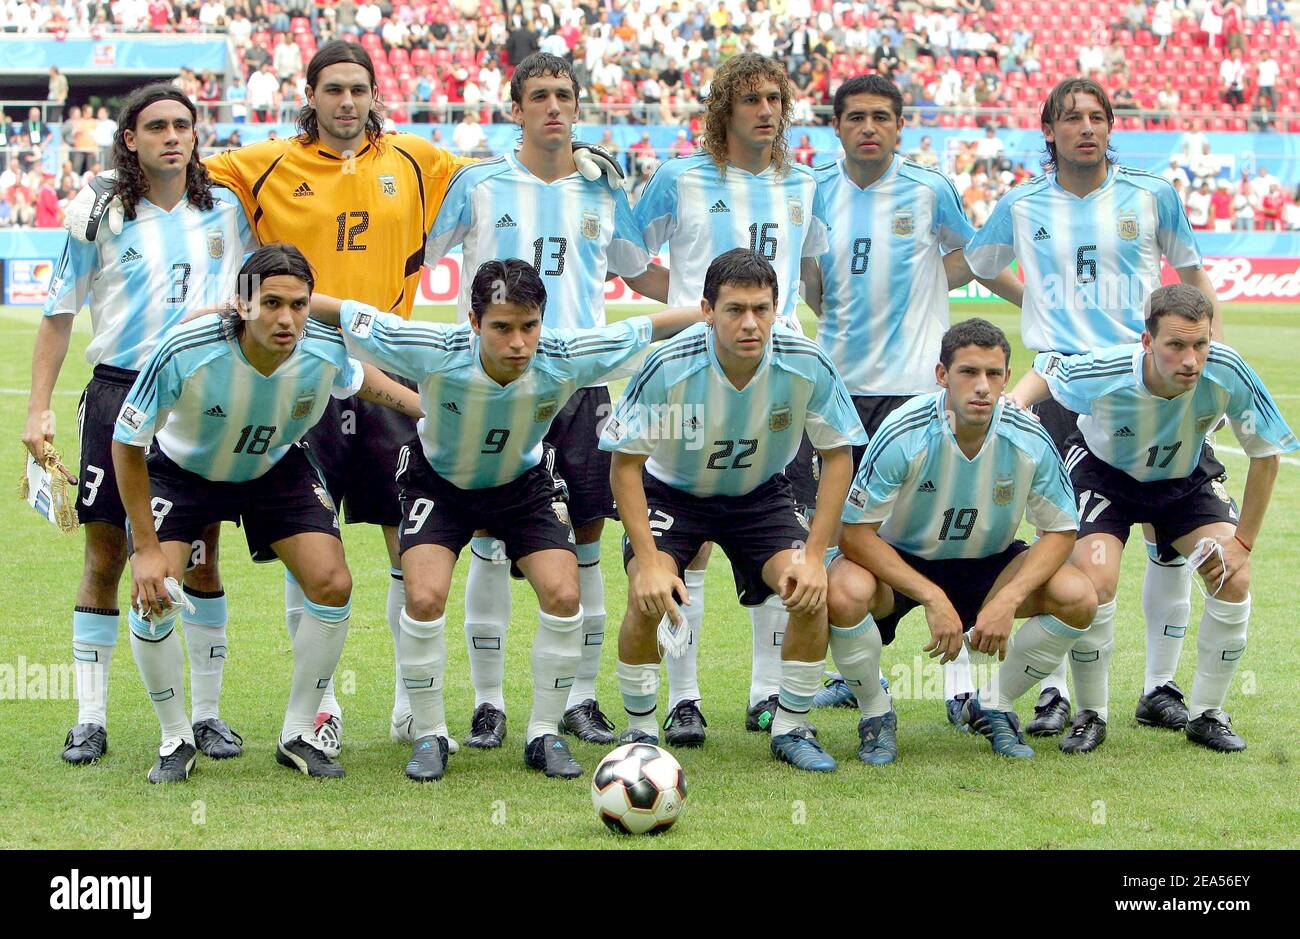 La squadra di calcio argentina durante il primo round della FIFA  Confederations Cup, Argentina contro Tunisia, a Colonia, Germania, il 15  giugno 2006. Foto di Christian Liegi/ABACAPRESS.COM Foto stock - Alamy